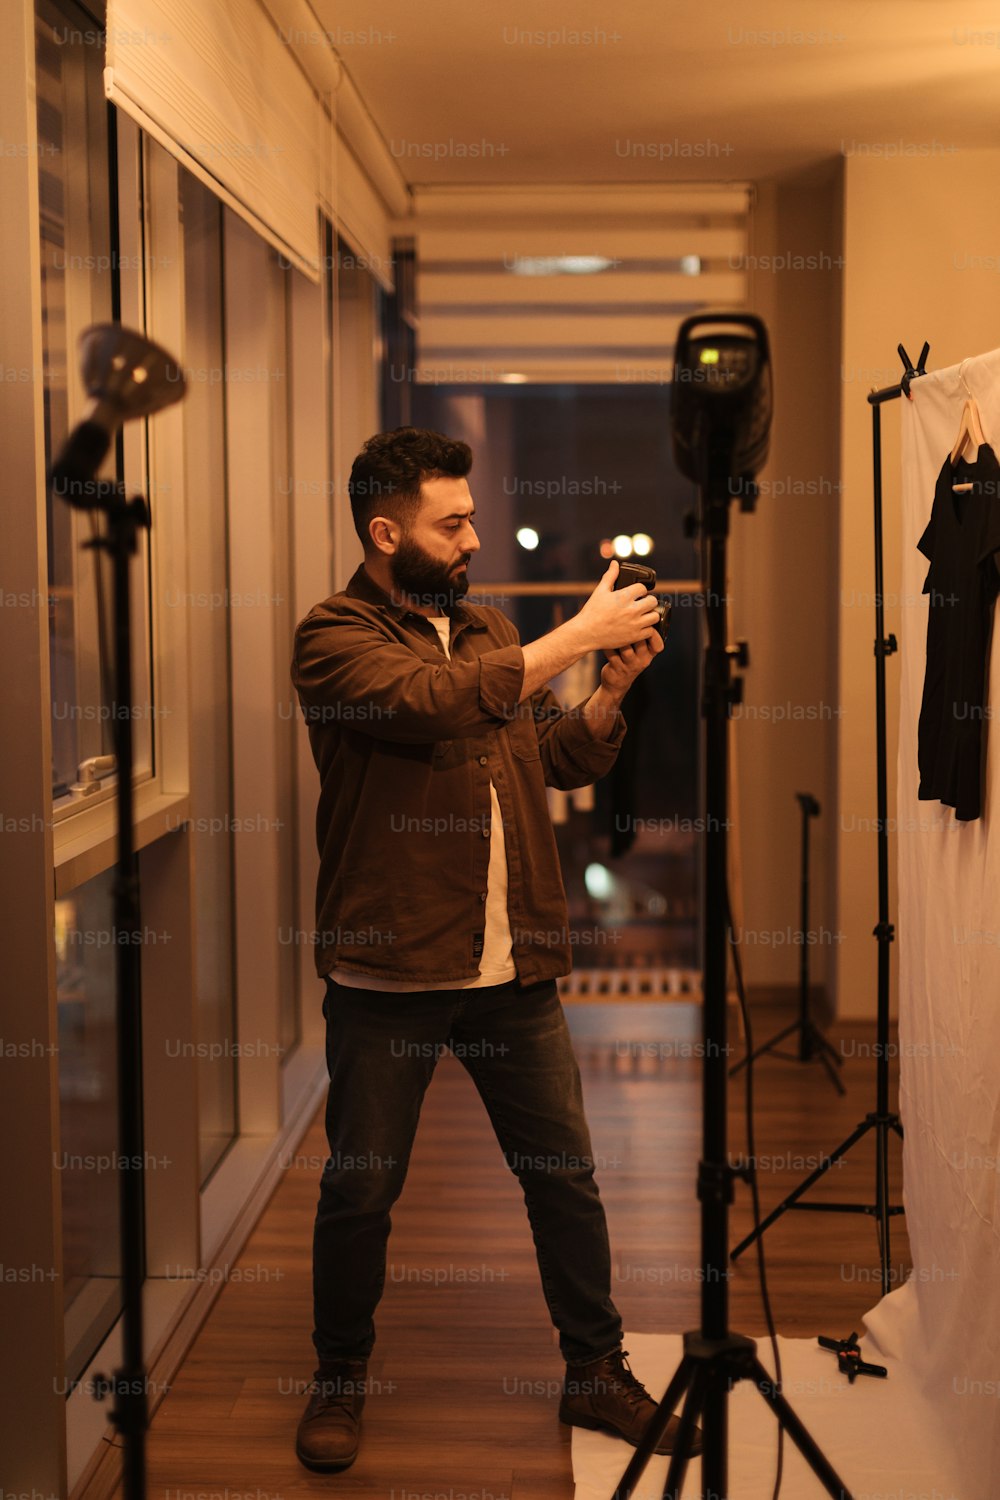 Un homme se prenant en photo devant une caméra